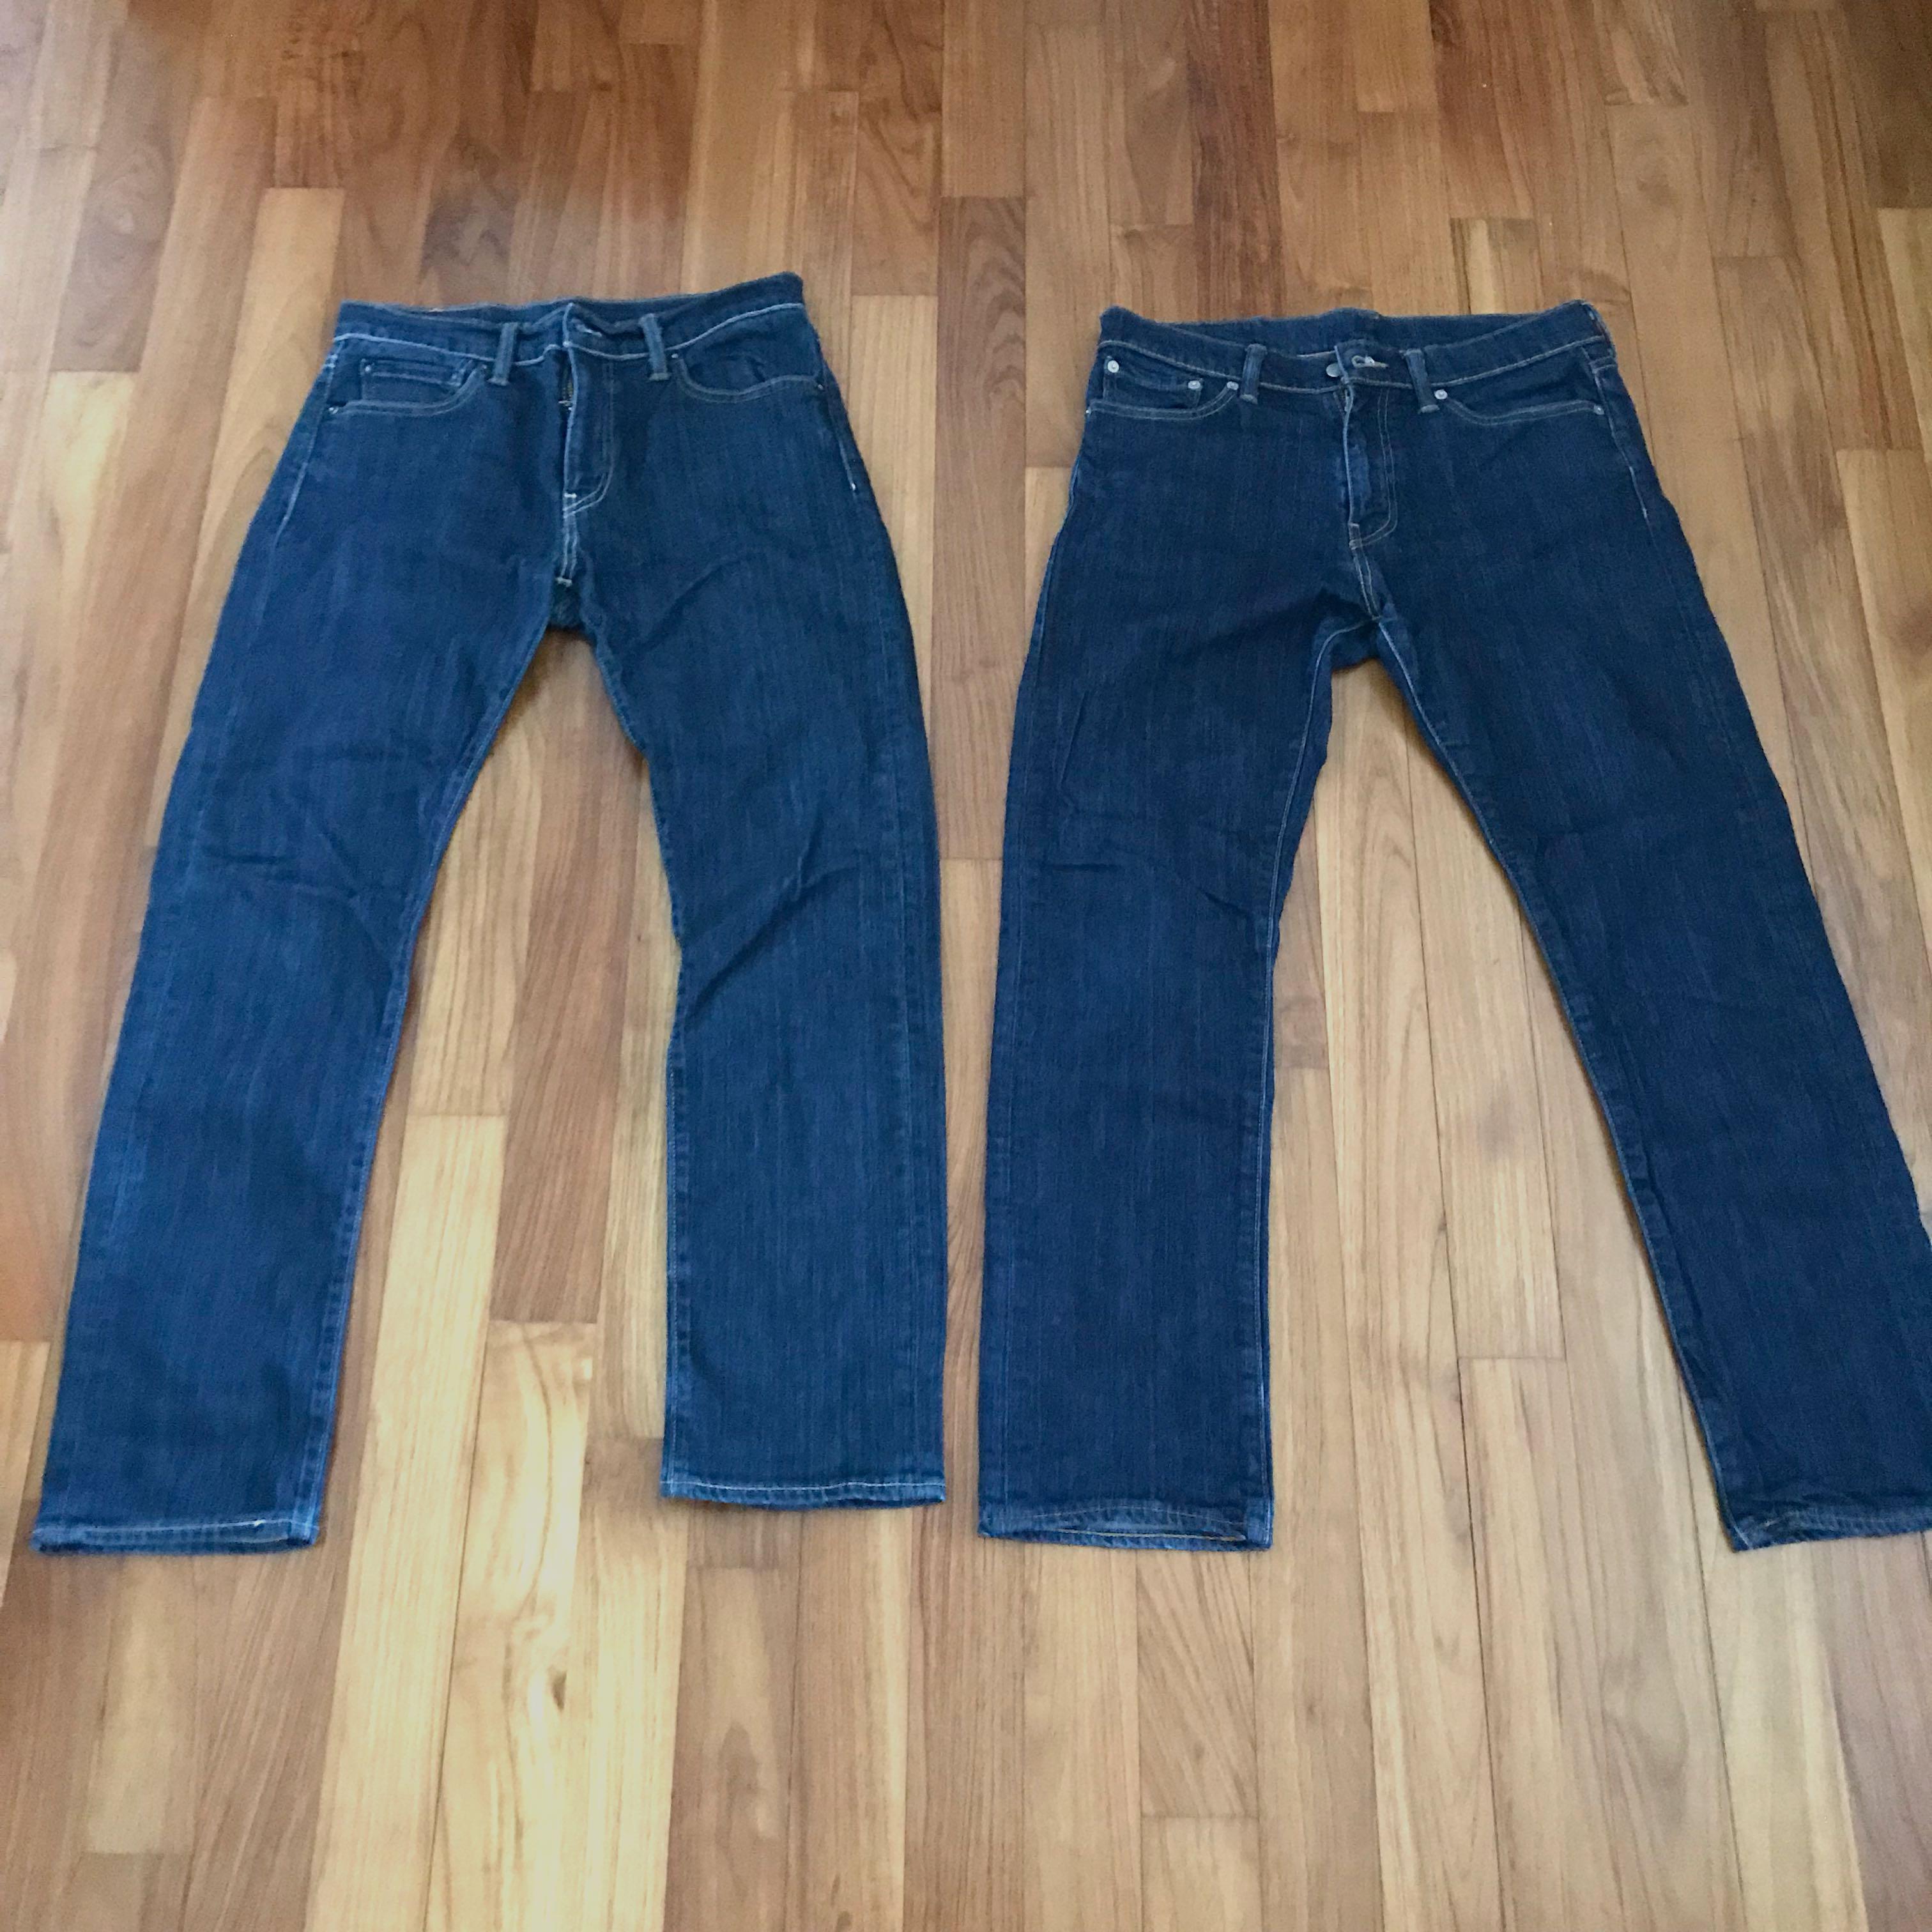 levis 504 womens jeans